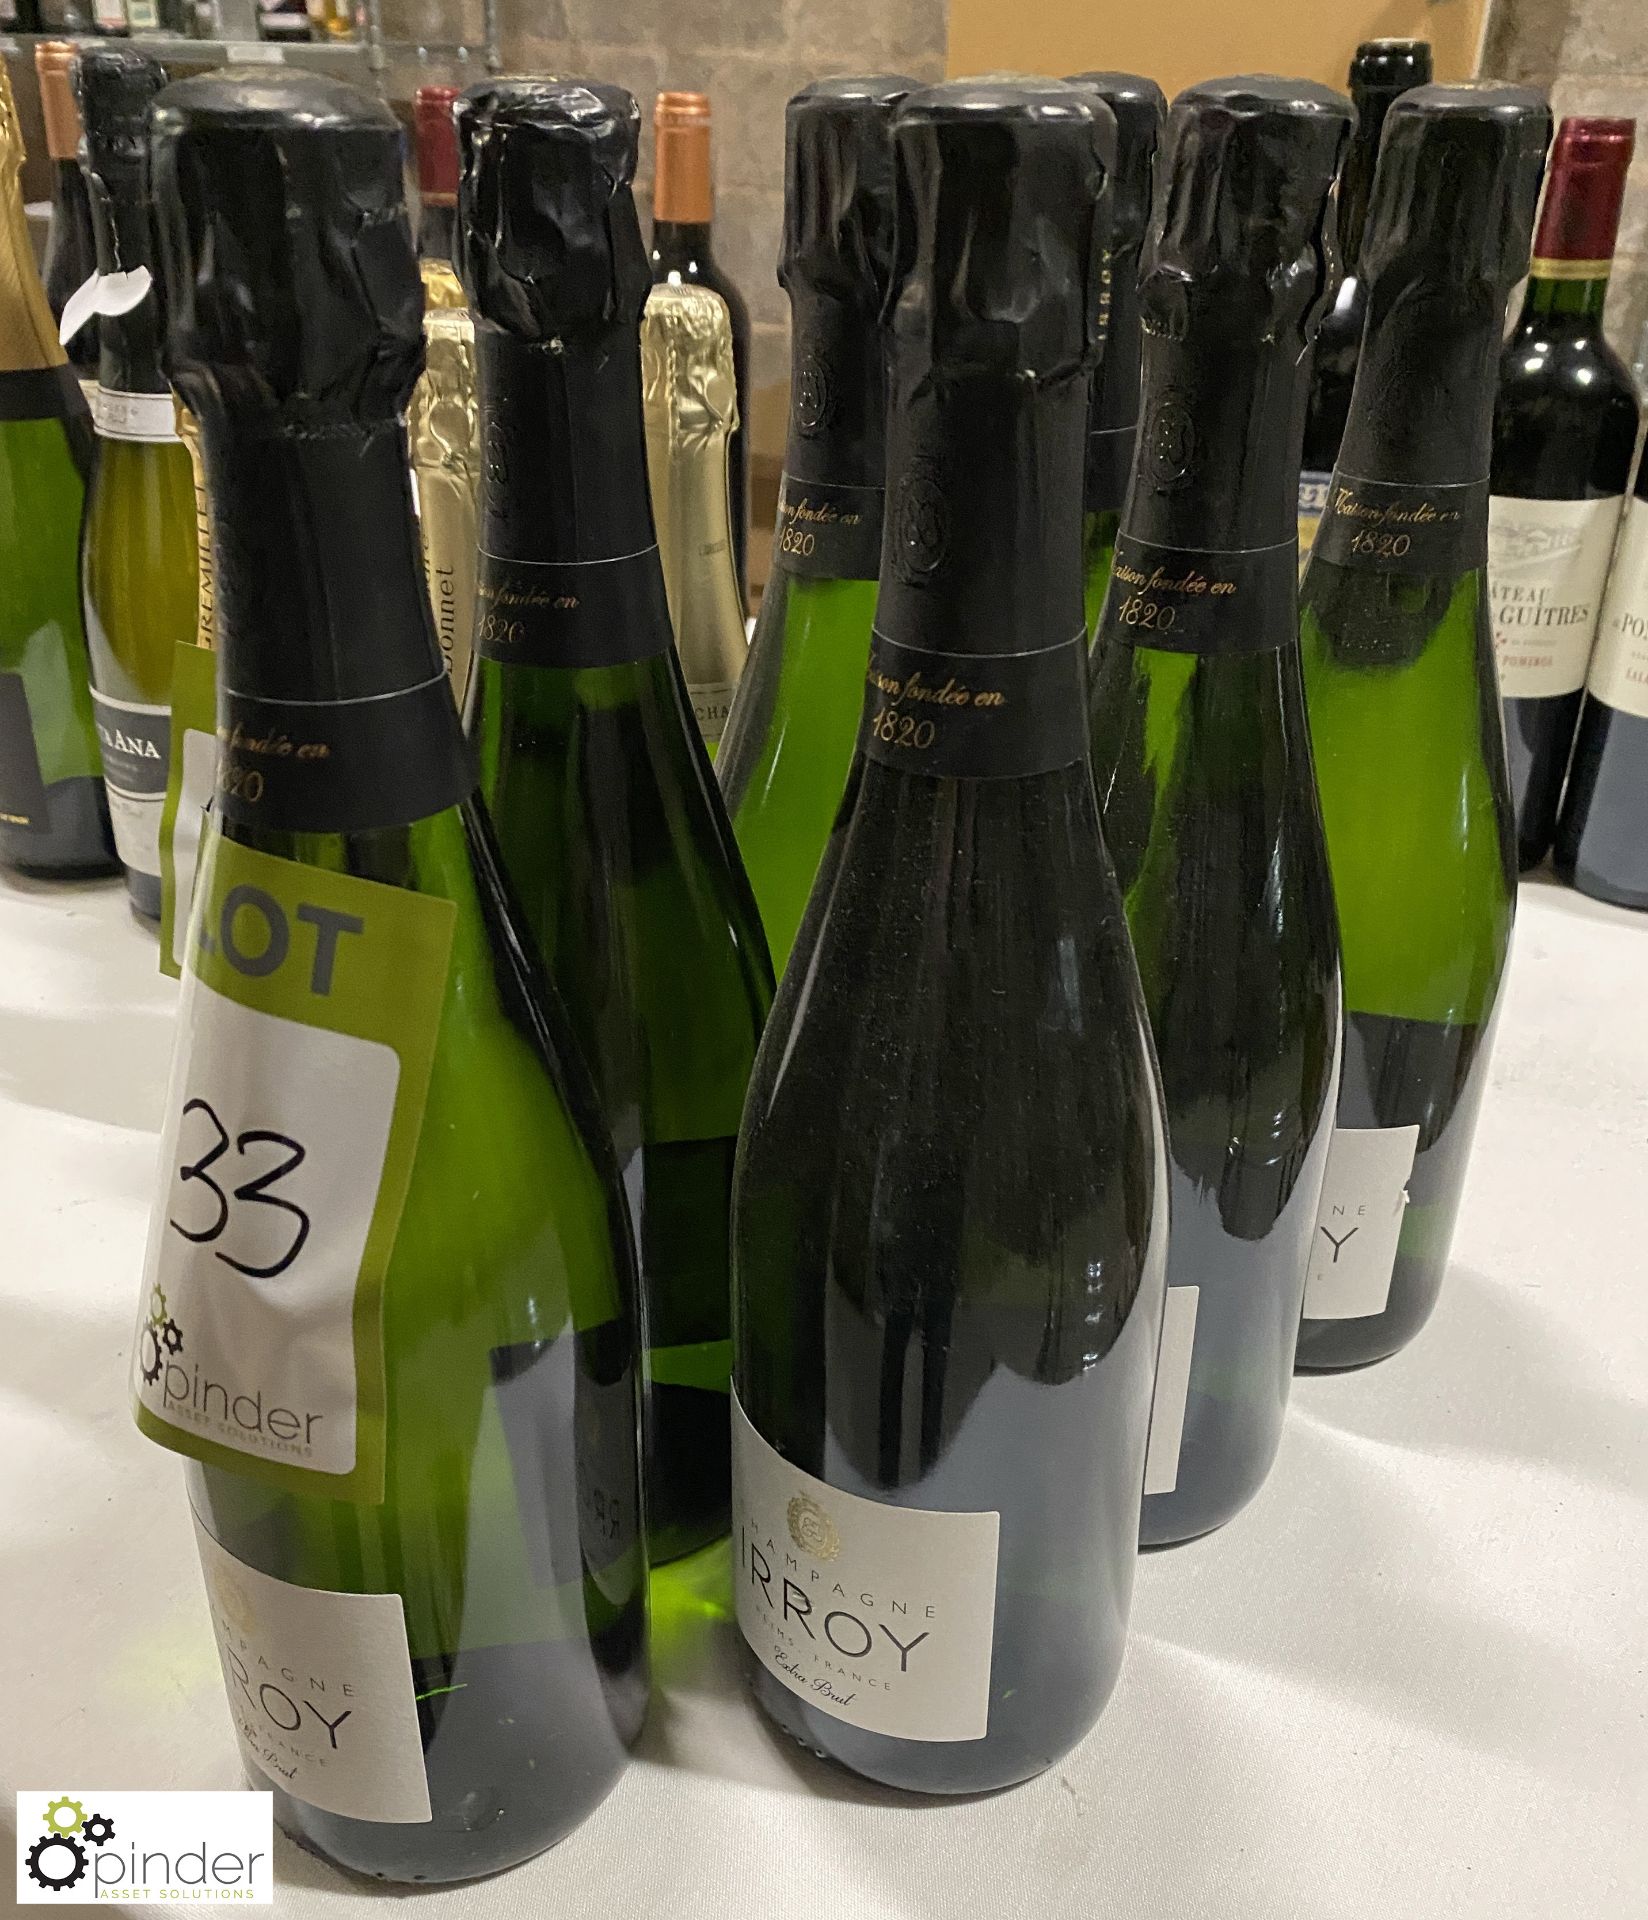 7 bottles Irroy Champagne, extra Brut (LOCATION: Devon)